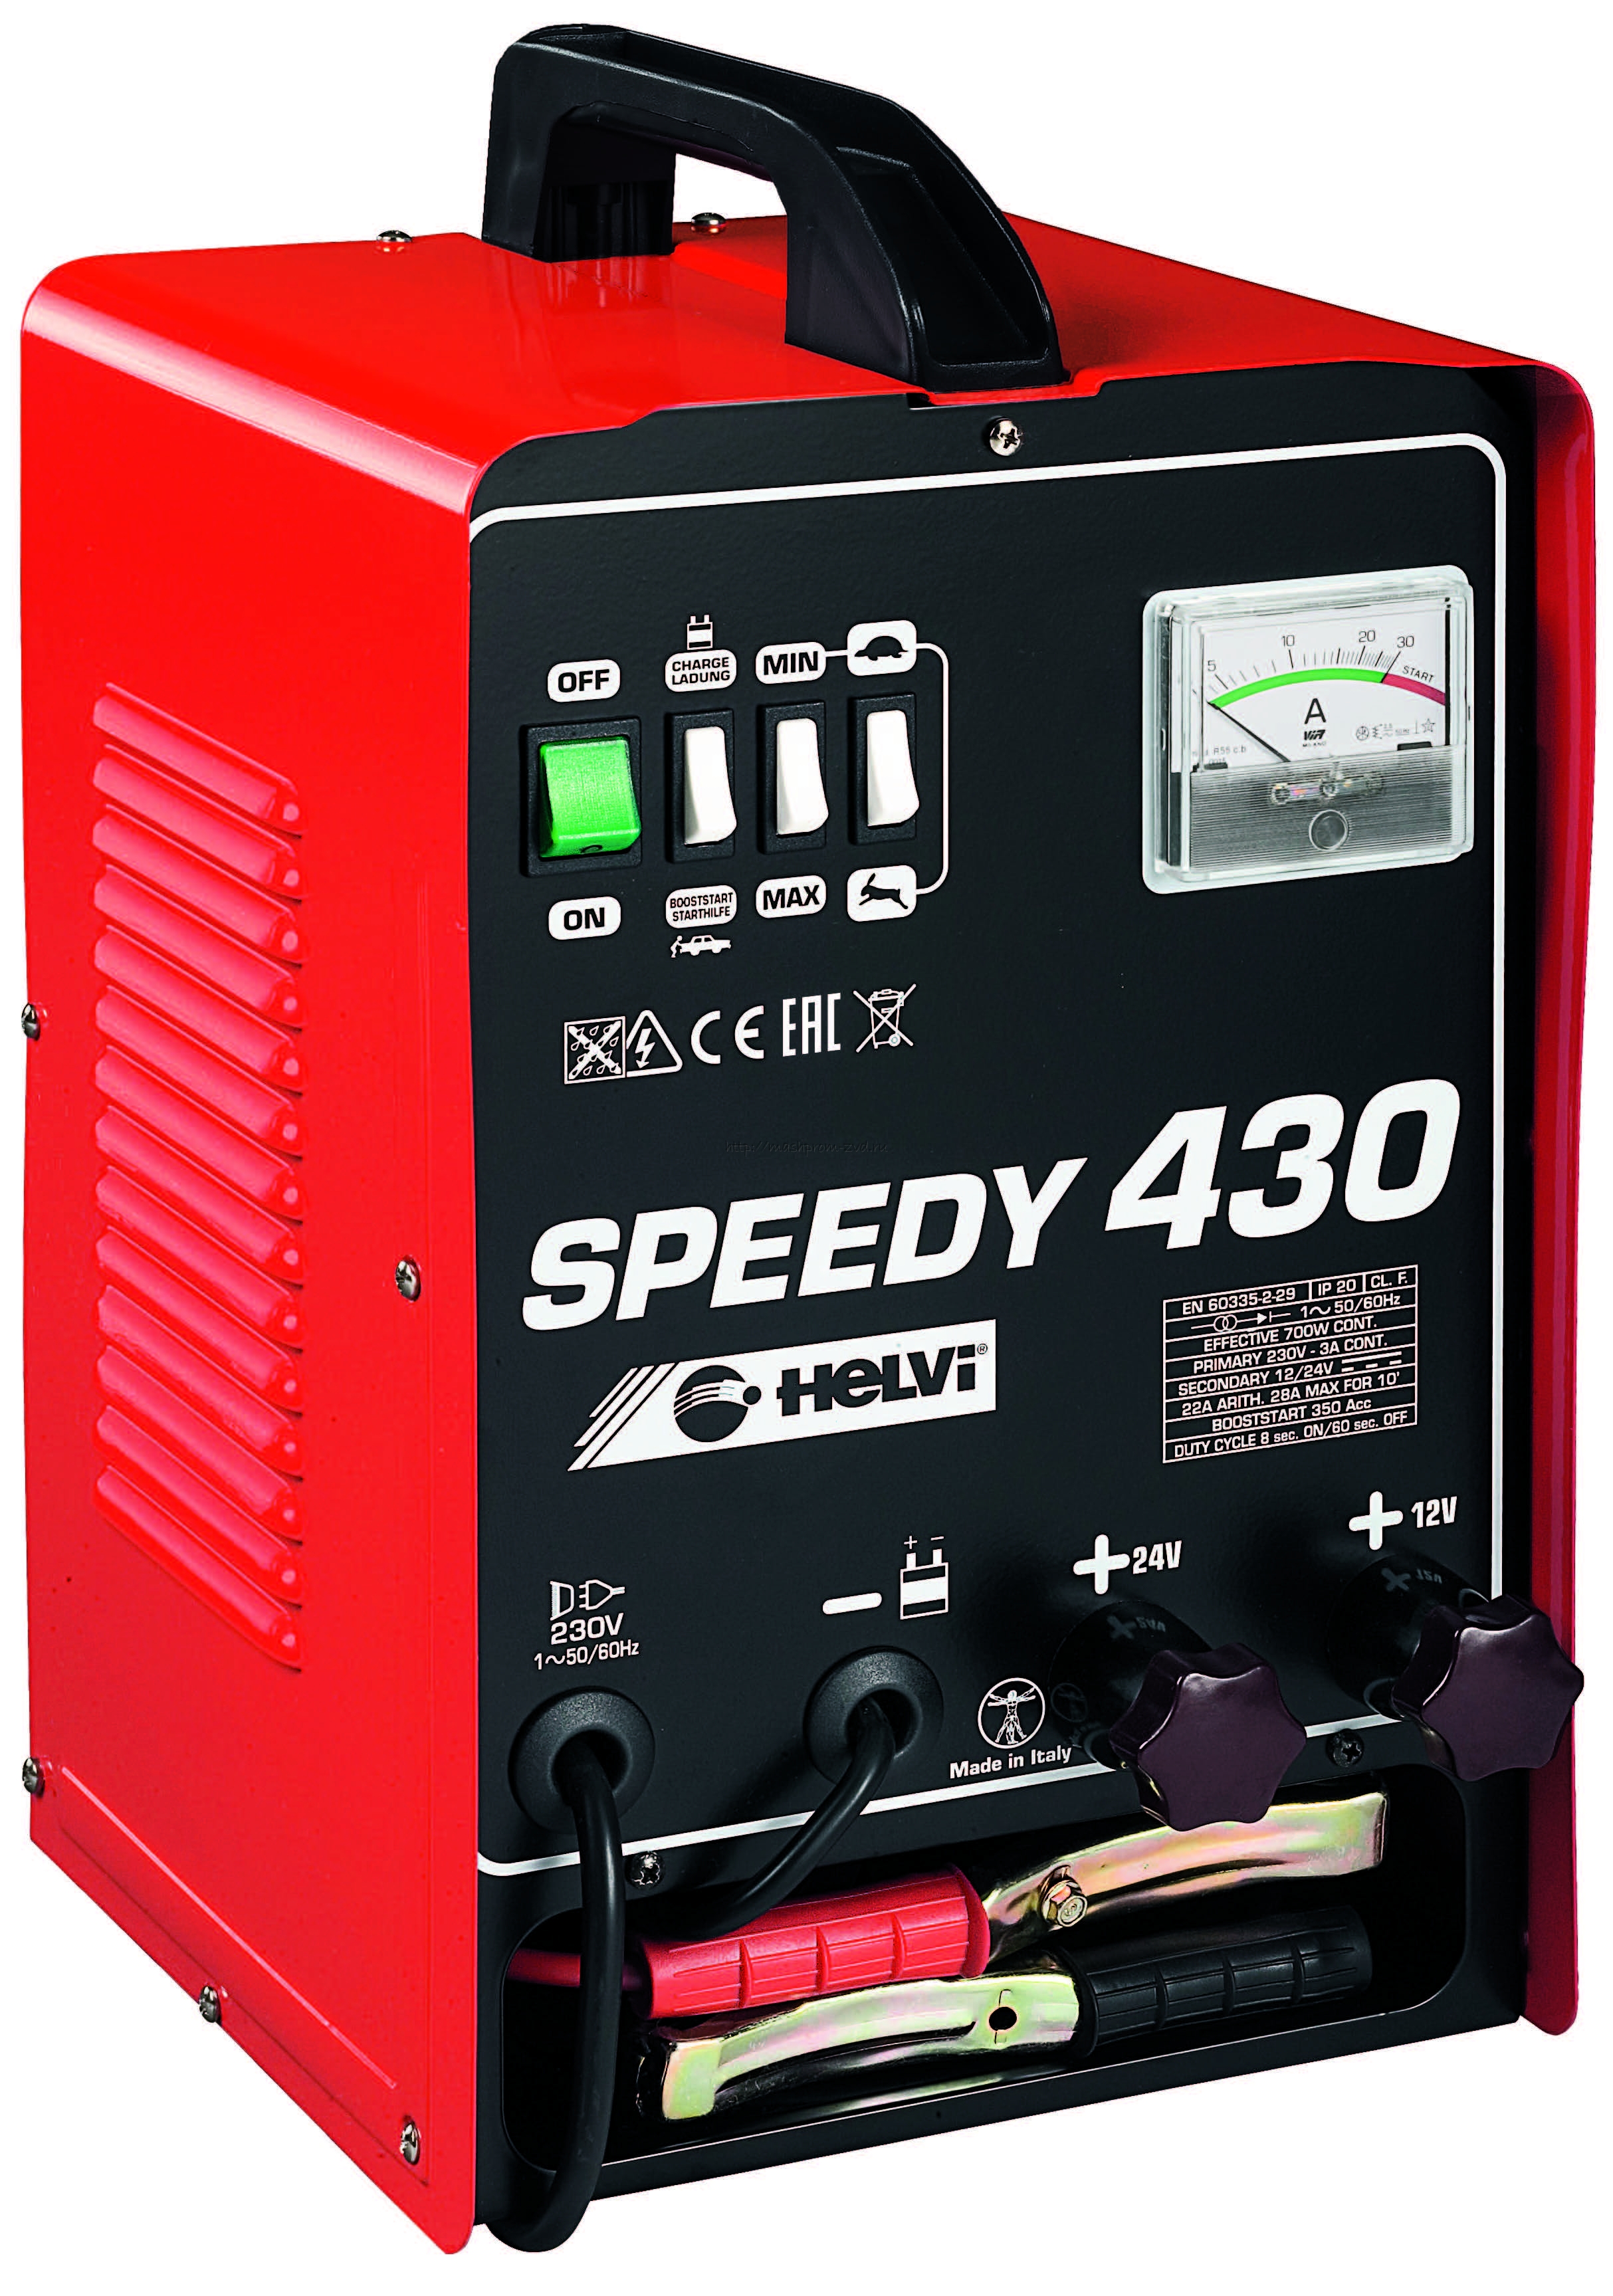 Пуско-зарядное устройство HELVI Speedy 430 арт. 99005419